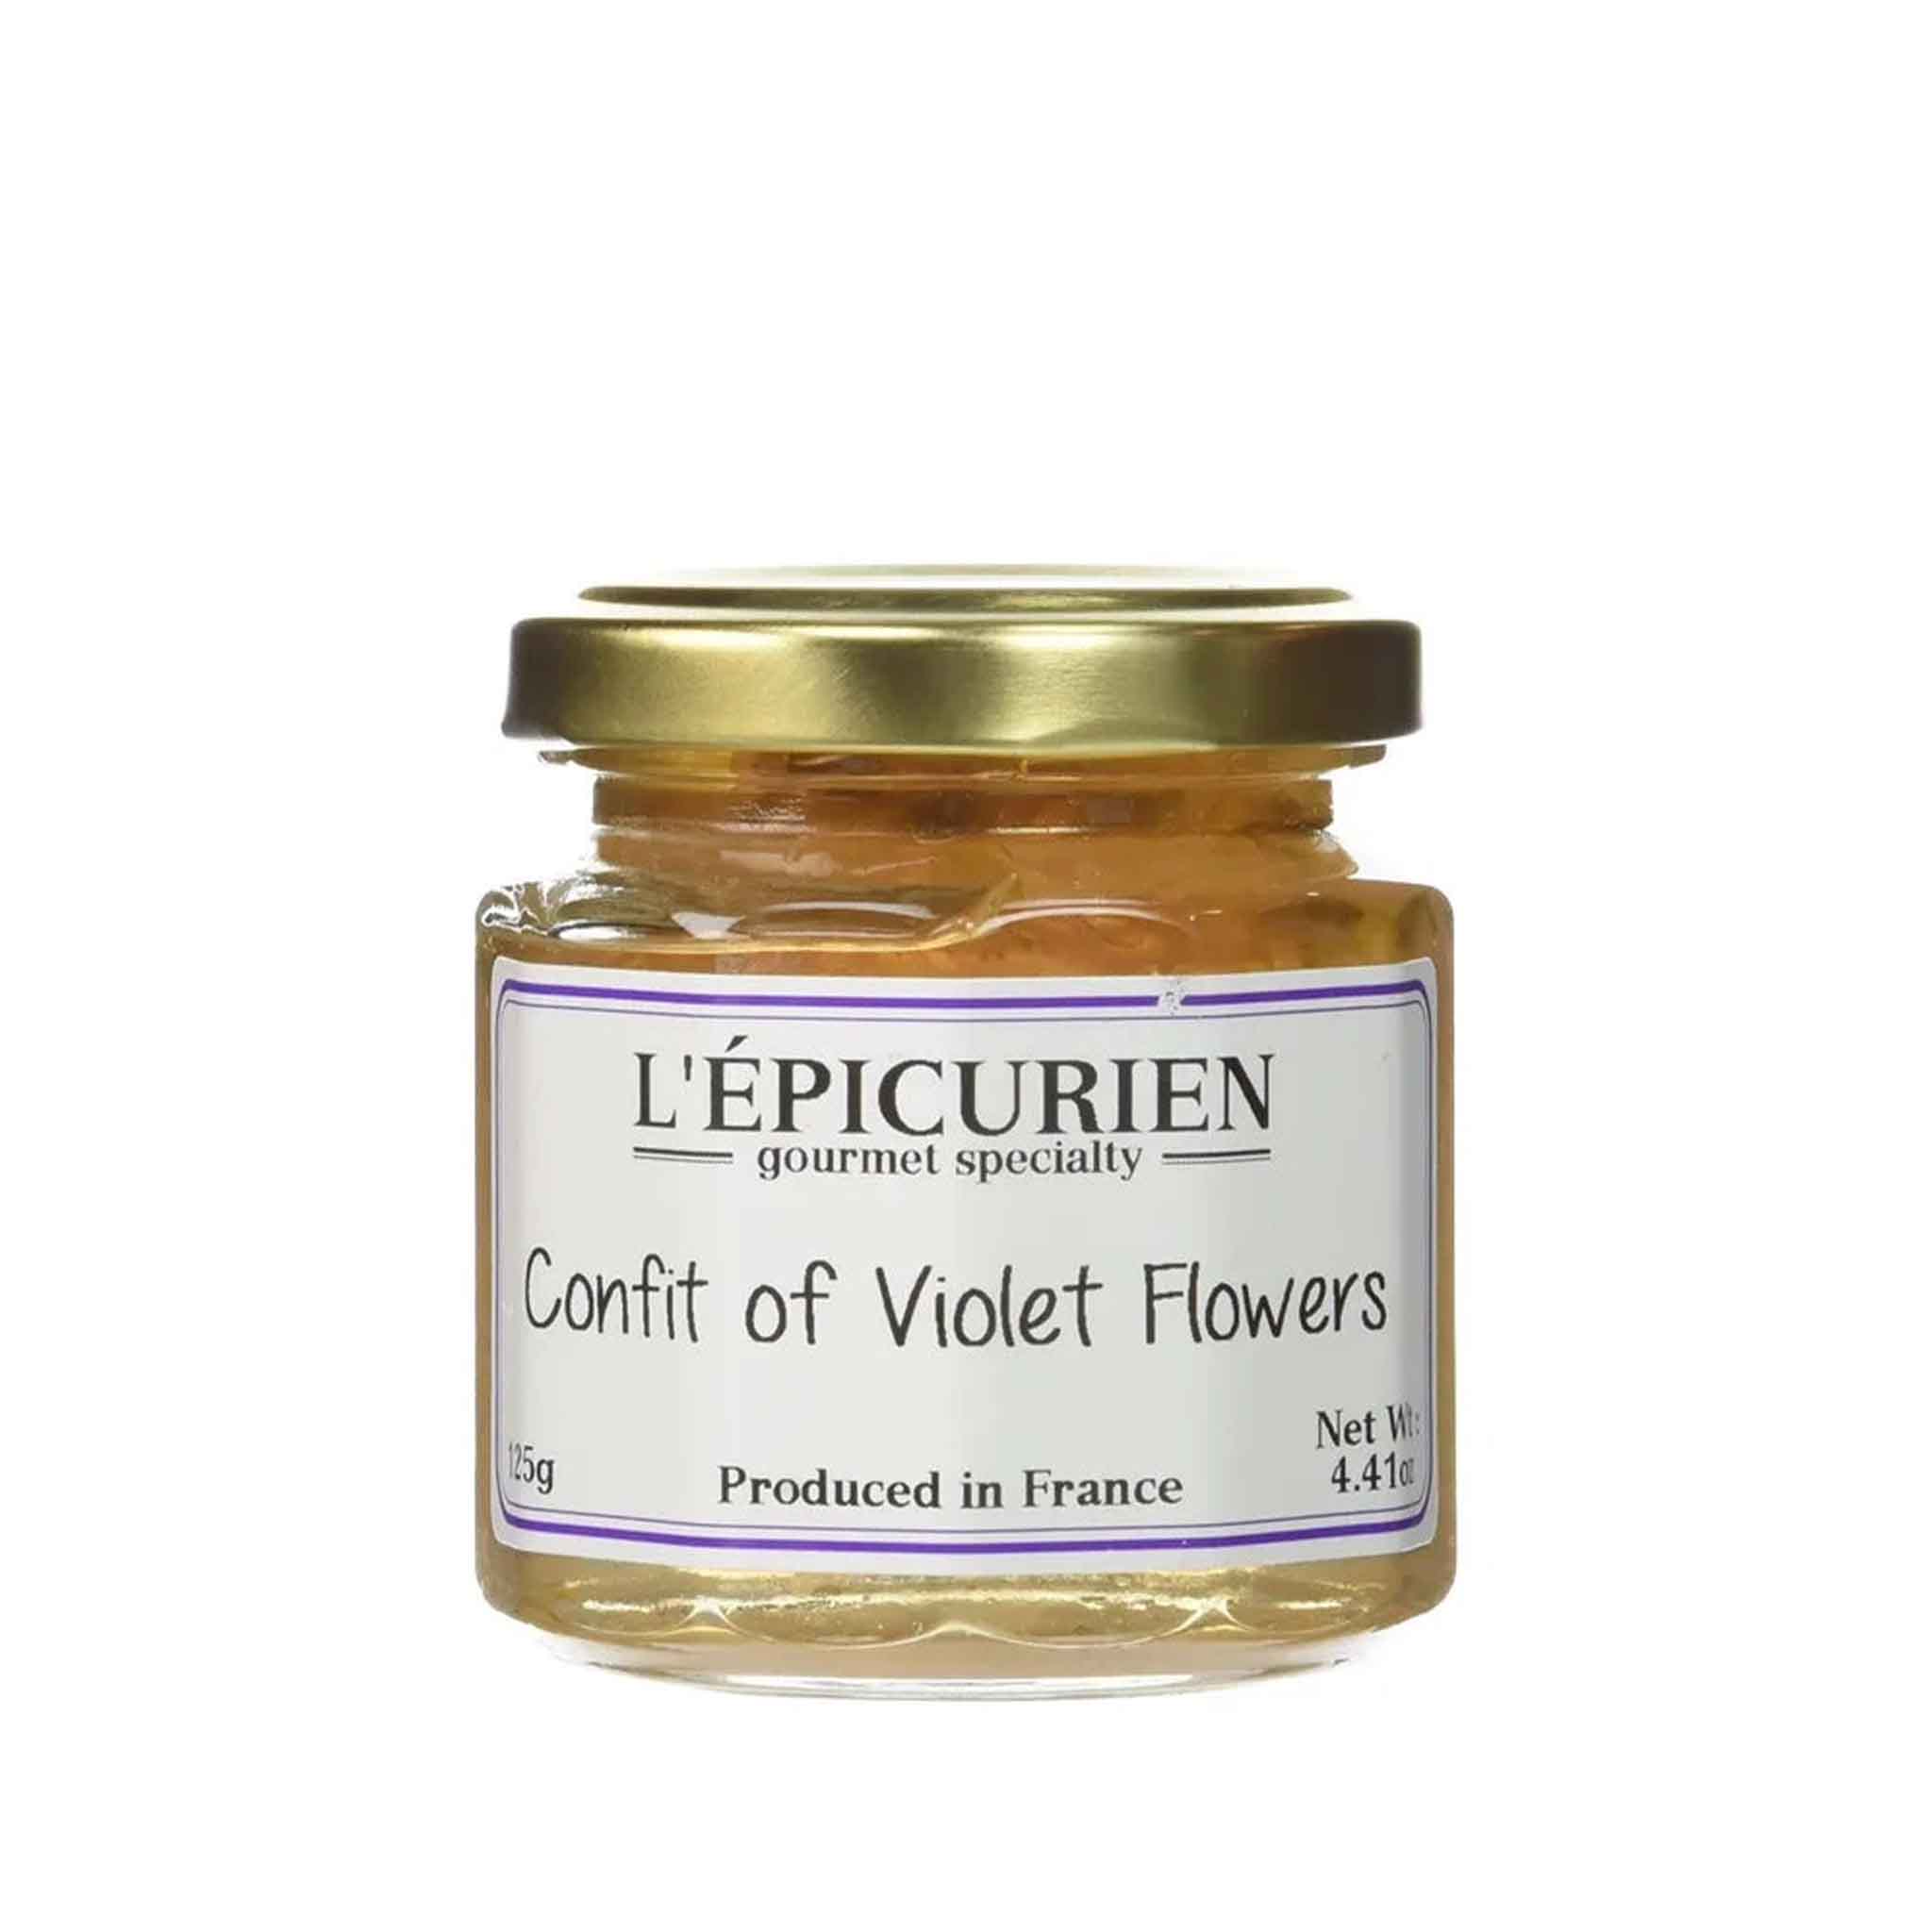 L'EPICURIEN VIOLET FLOWERS CONFIT 125g